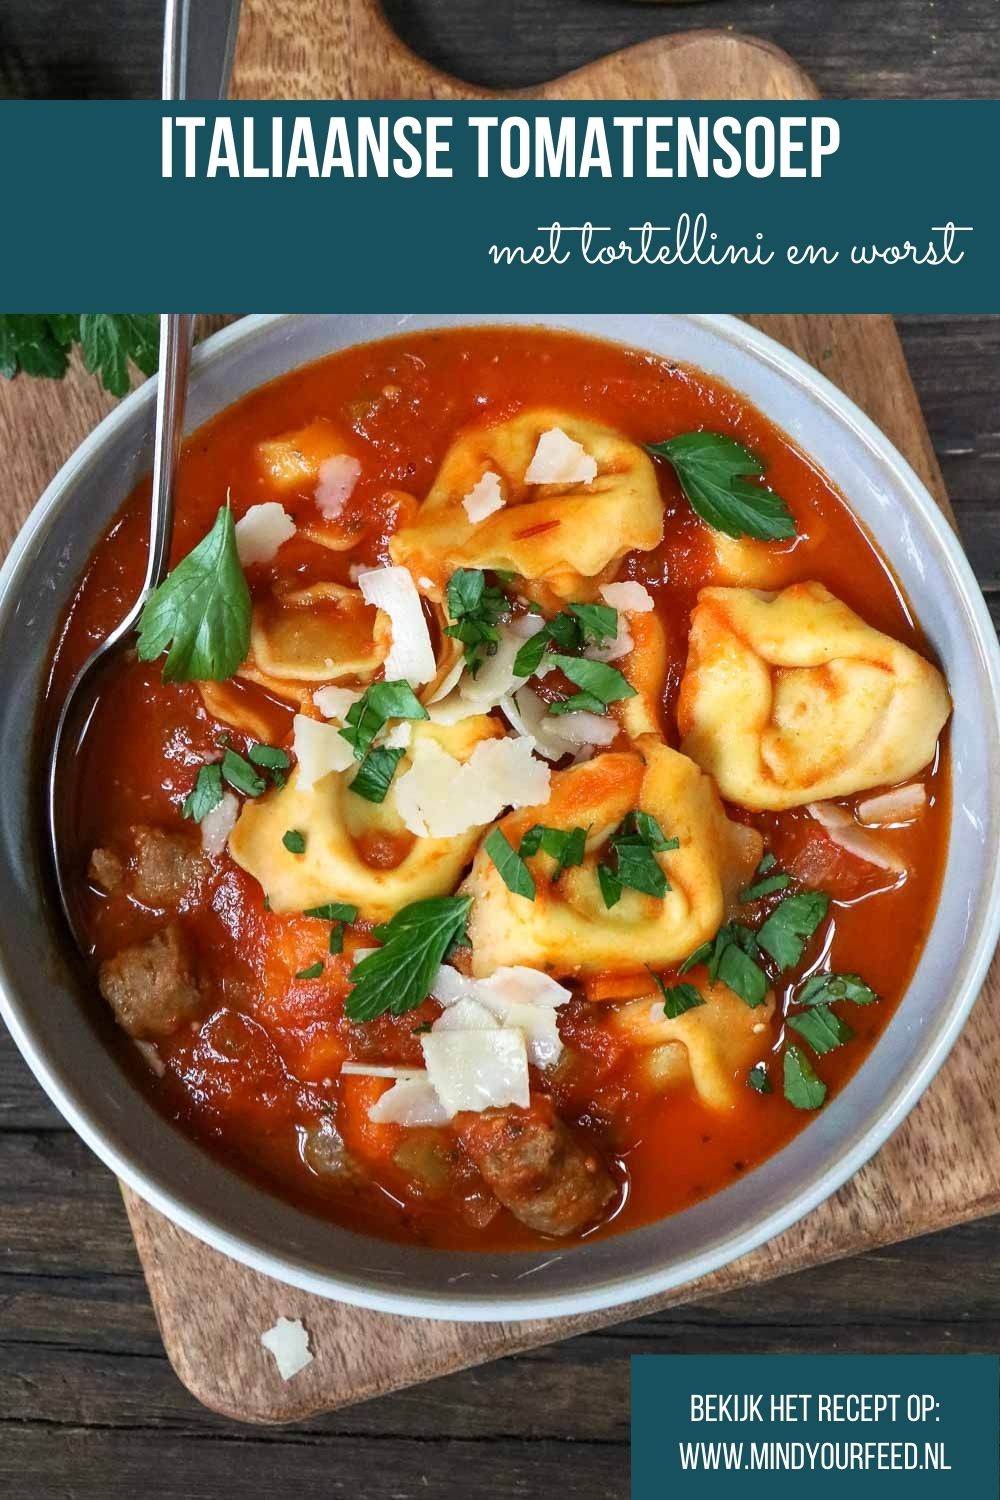 Italiaanse tomatensoep met tortellini, Italiaanse maaltijdsoep, makkelijk recept voor goed gevulde tomatensoep met verse tortellini en worst